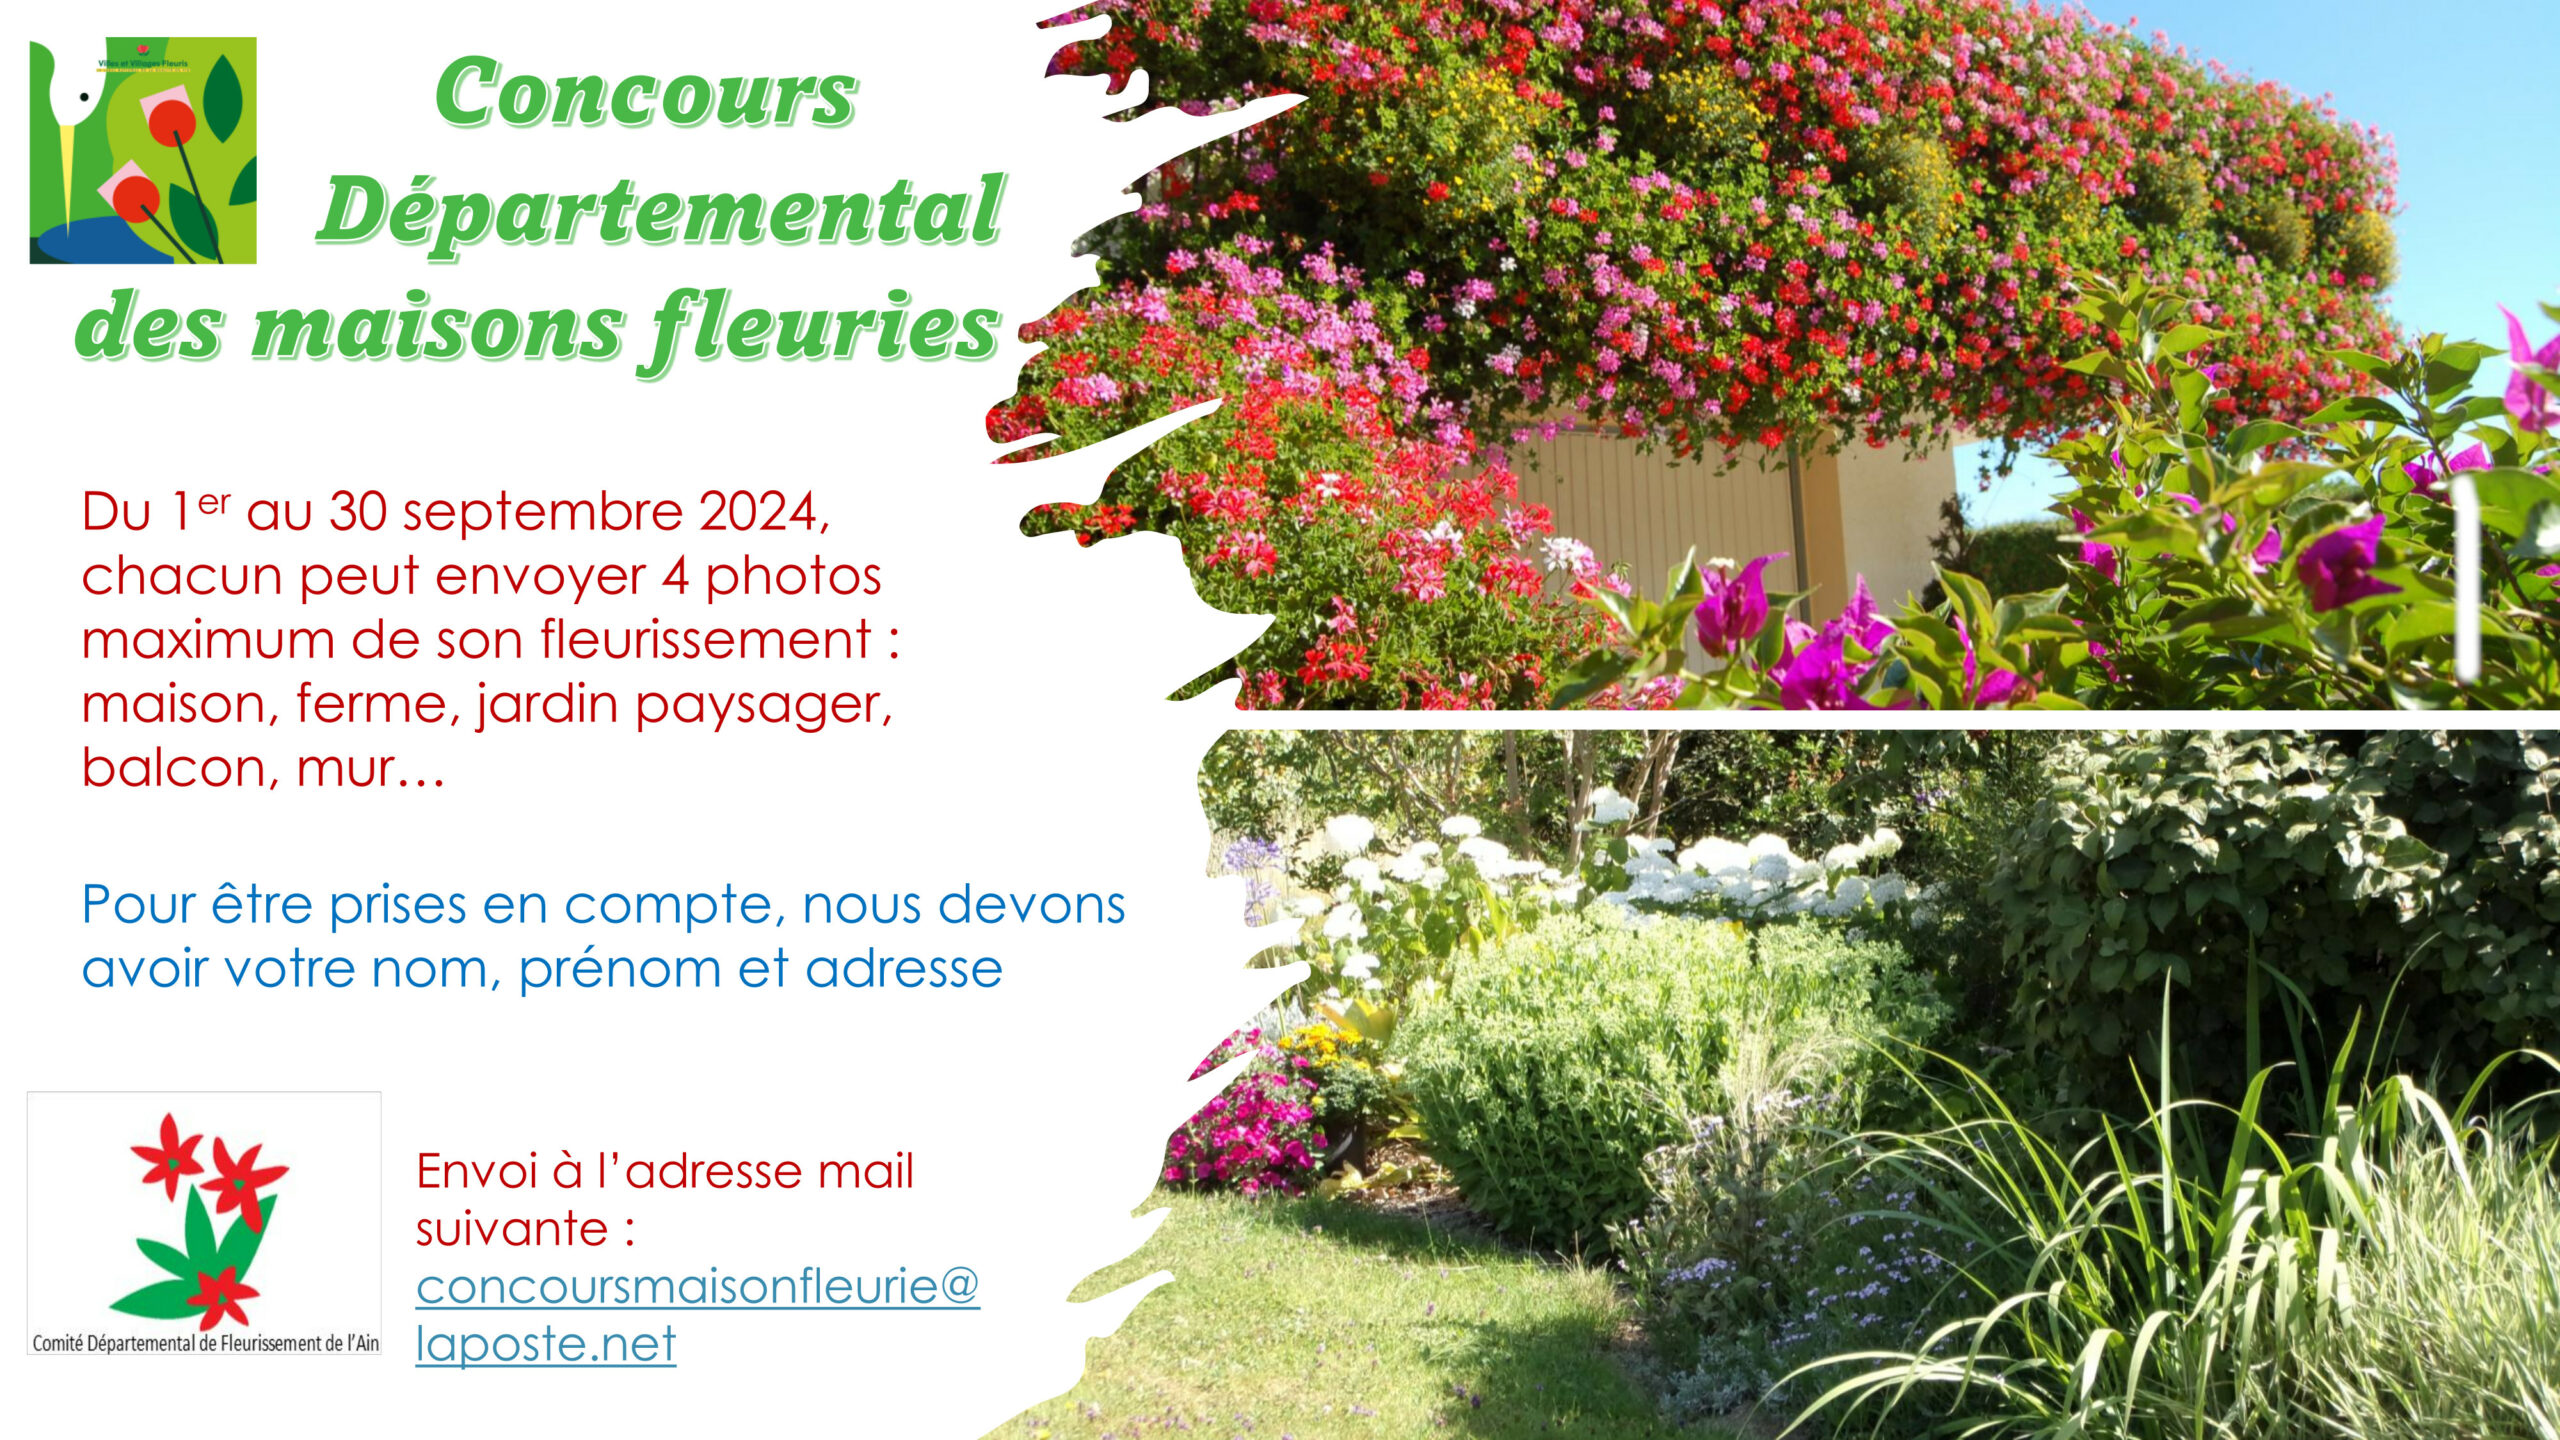 Concours départemental des maisons fleuries 🌺 🌼